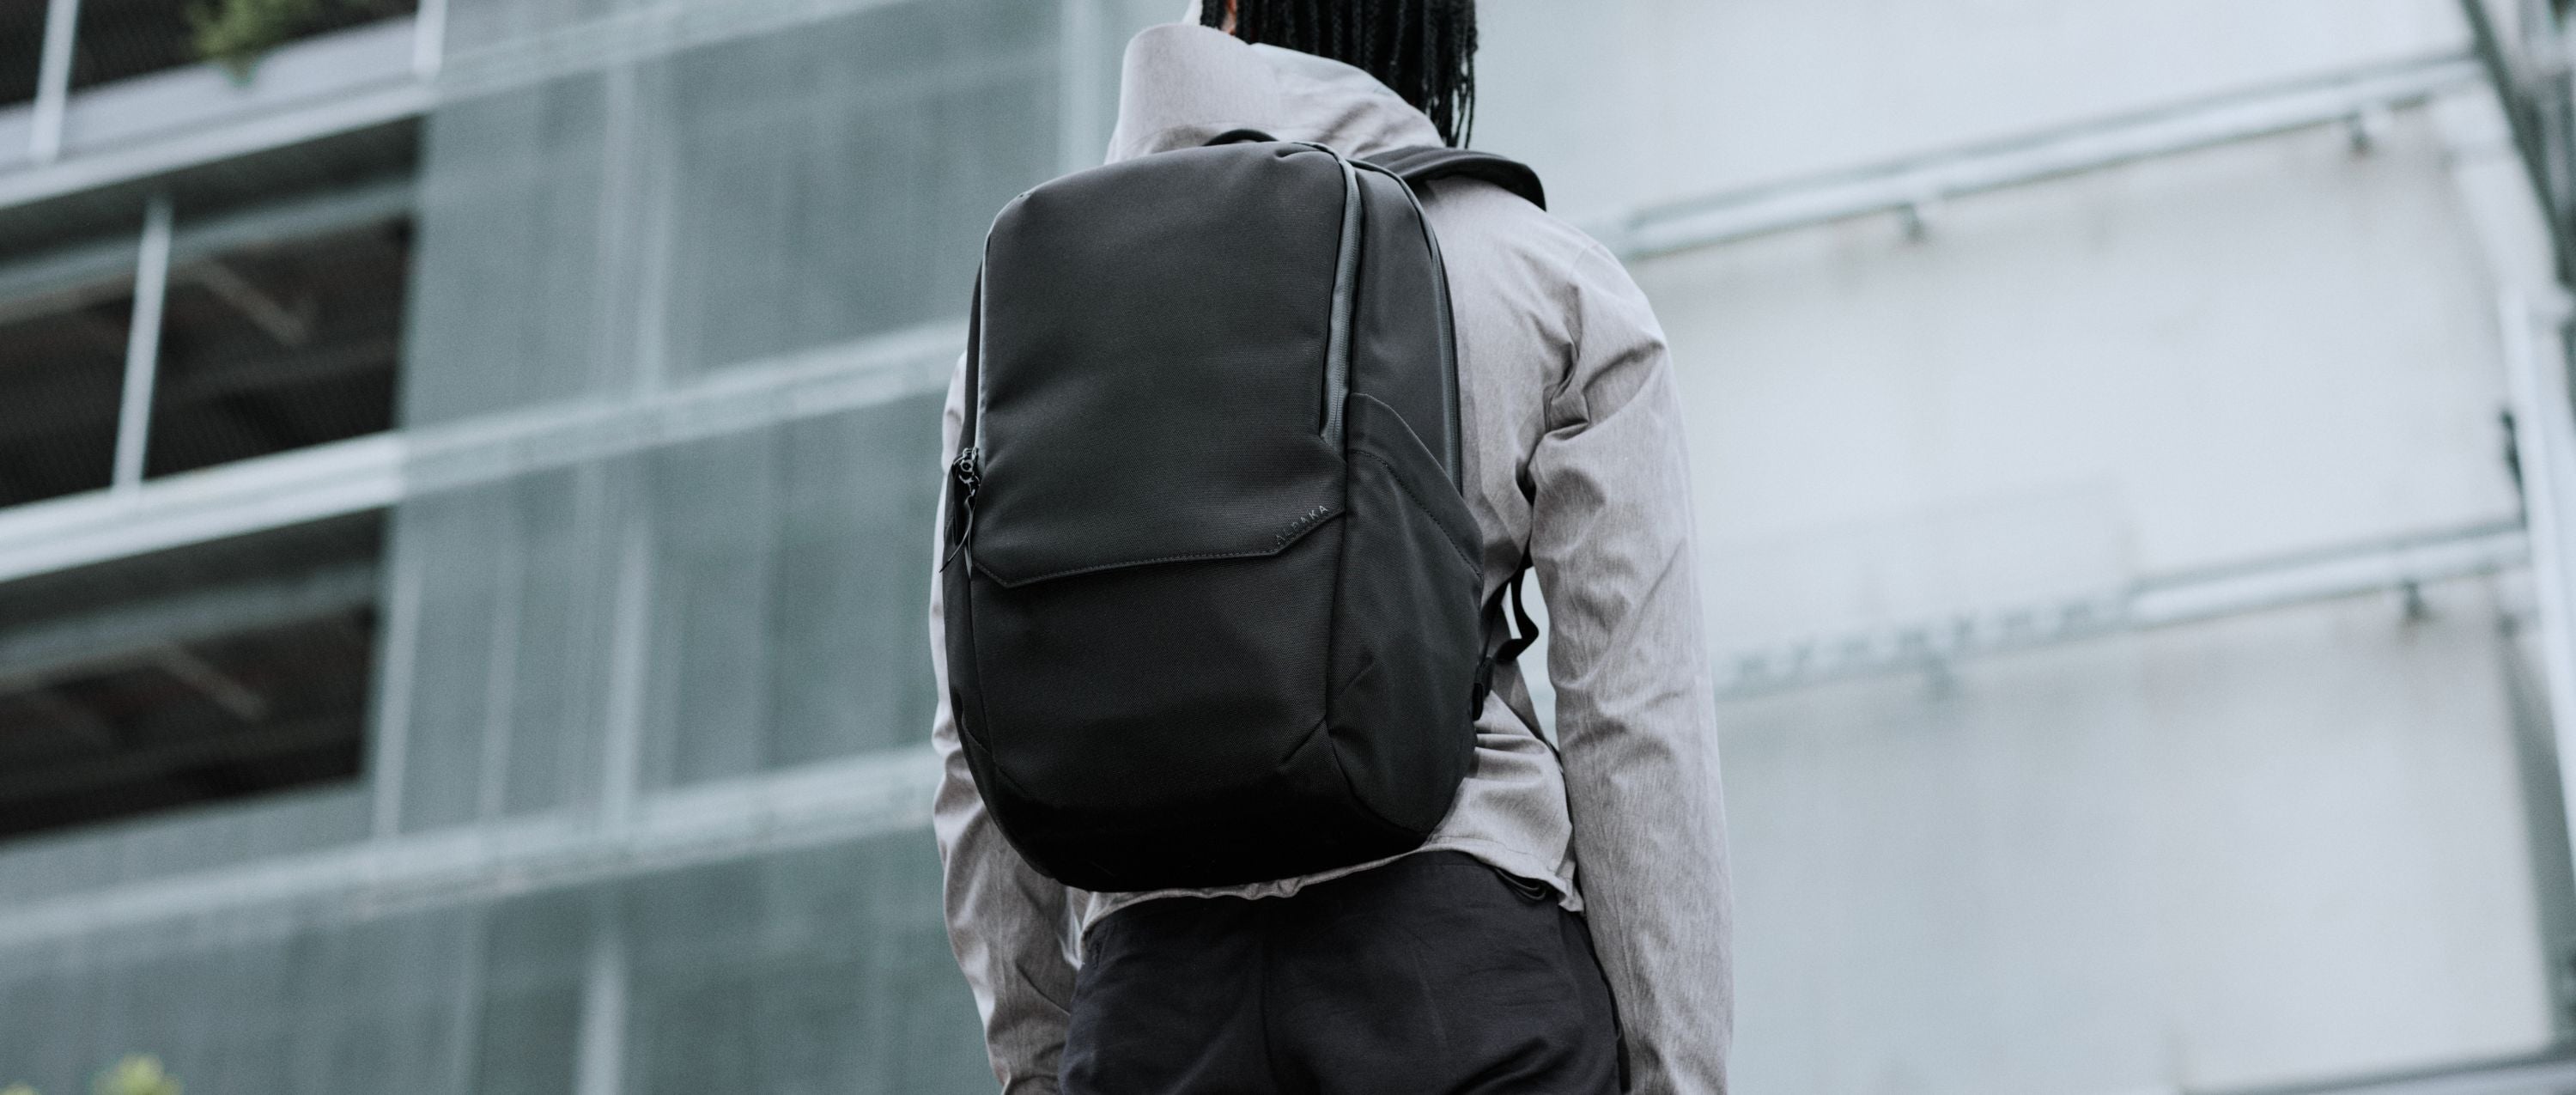 Elements Backpack Pro - organiseret, slidstærk og komfortabel rygsæk til hverdagen